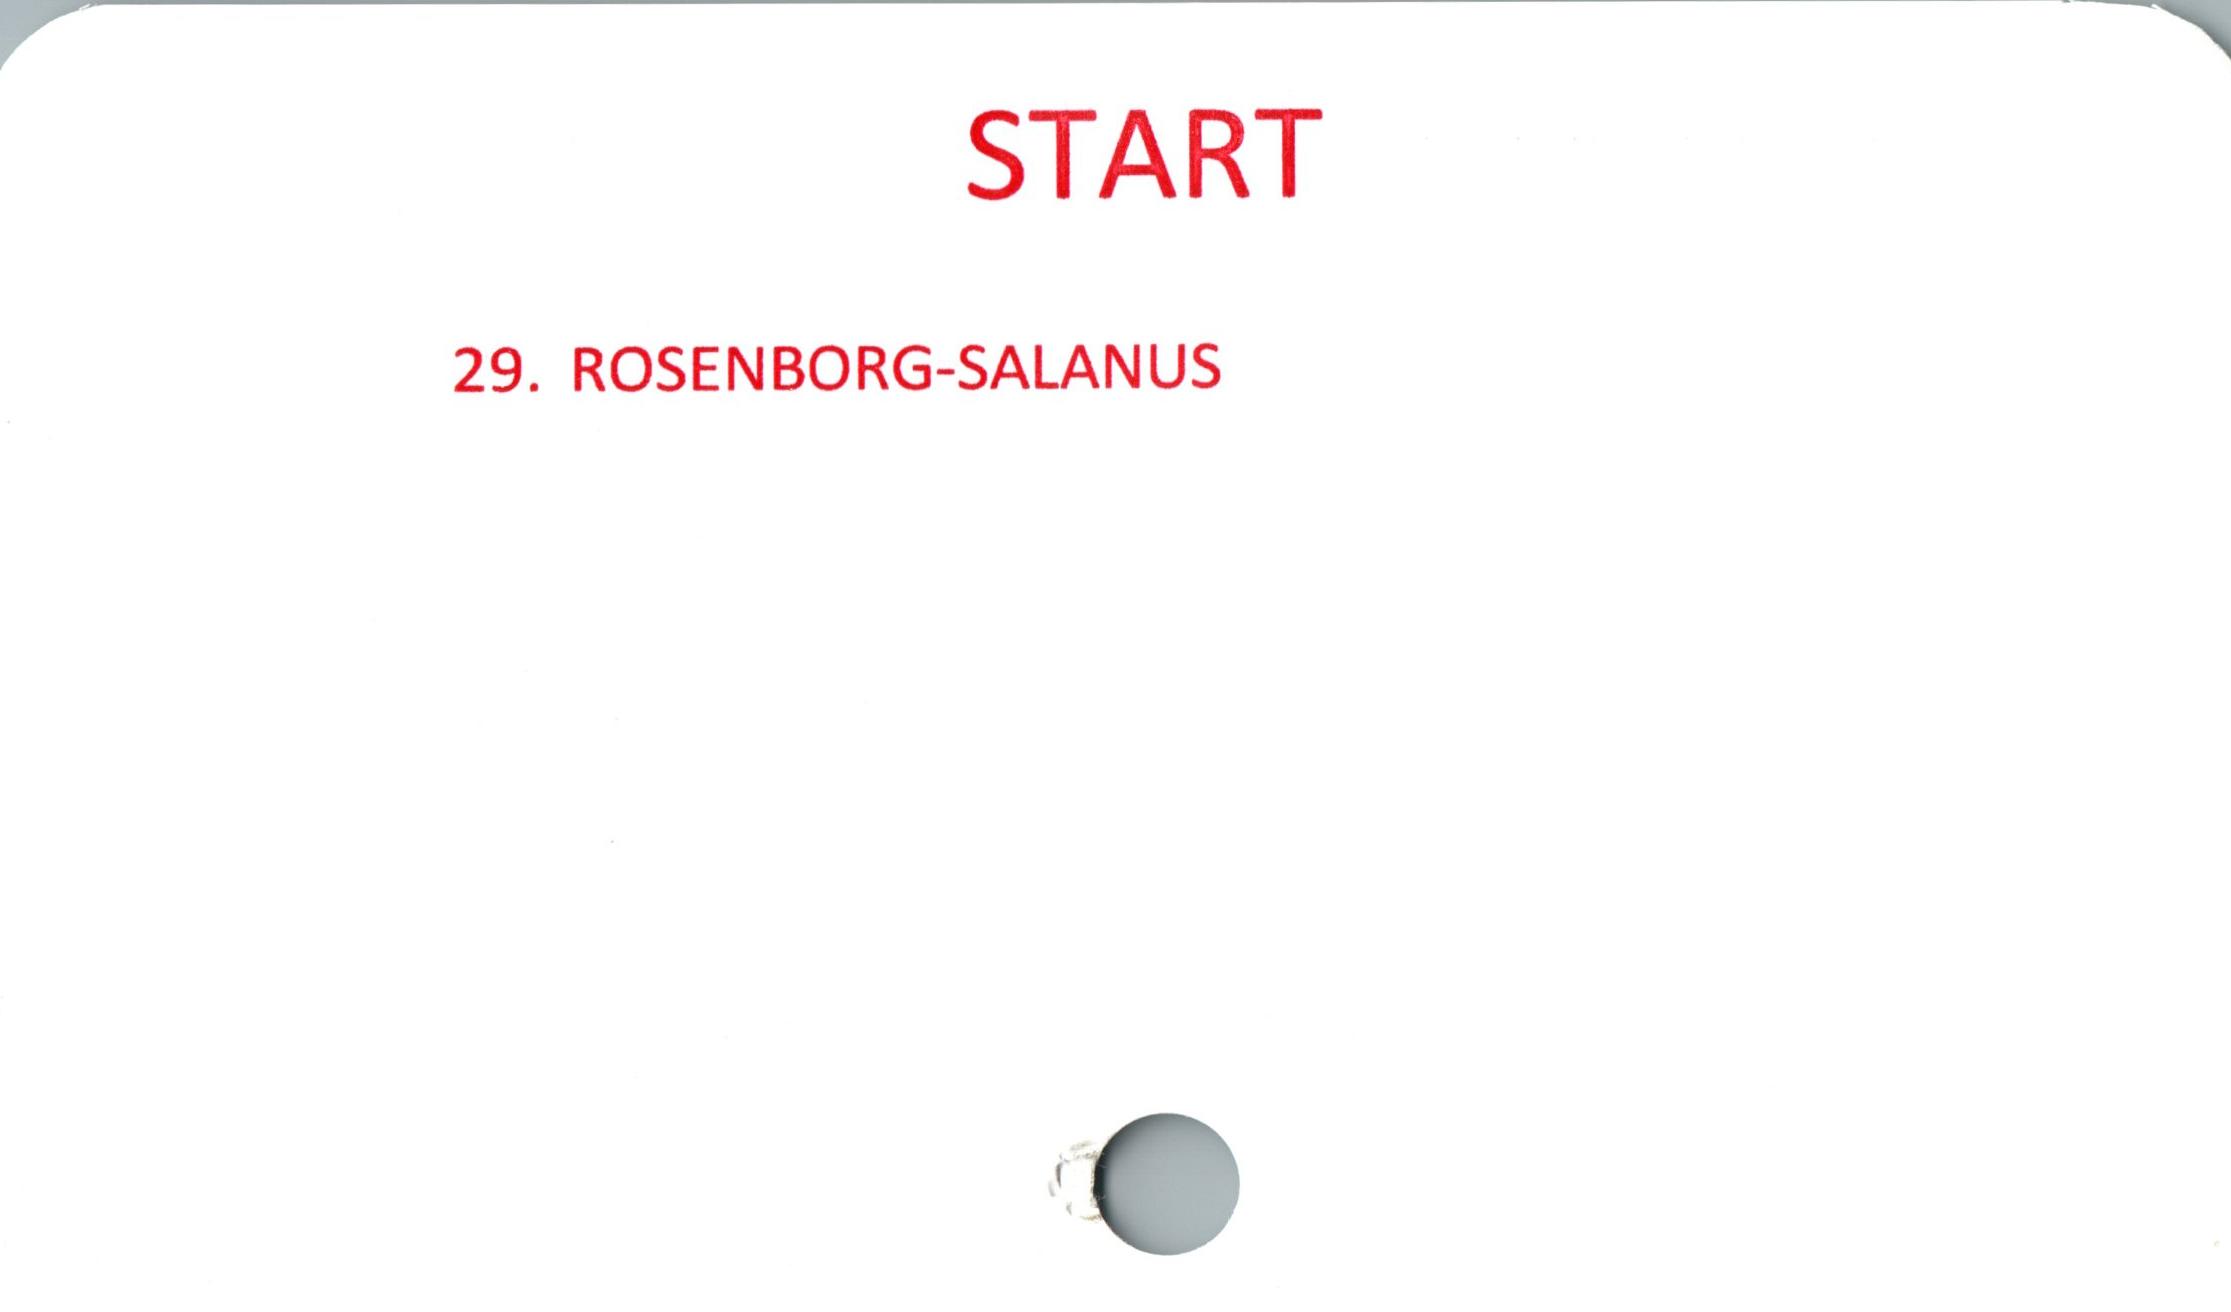 START ﻿START

29. ROSENBORG-SALANUS